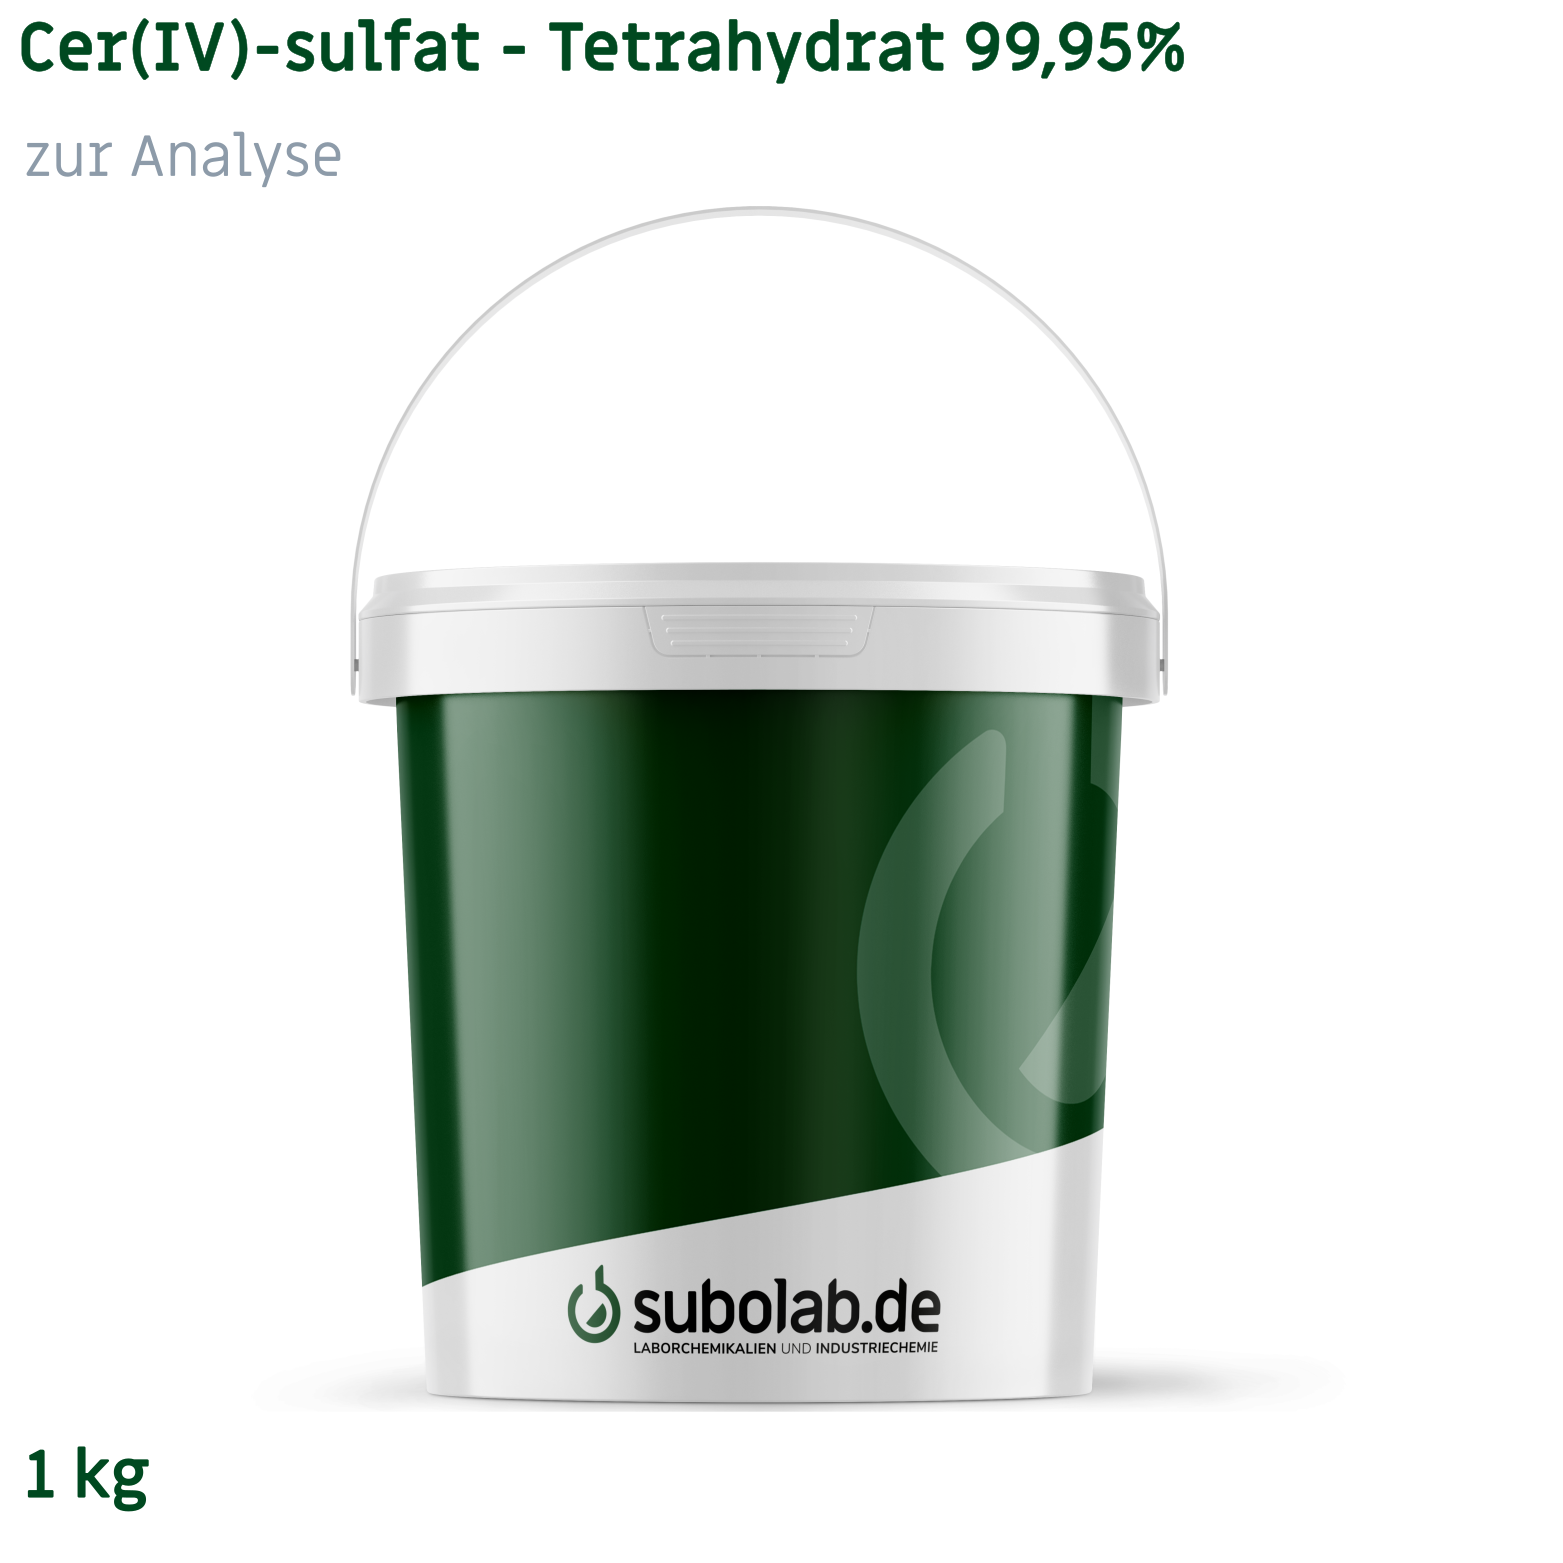 Bild von Cer(IV)-sulfat - Tetrahydrat 99,95% zur Analyse (1 kg)